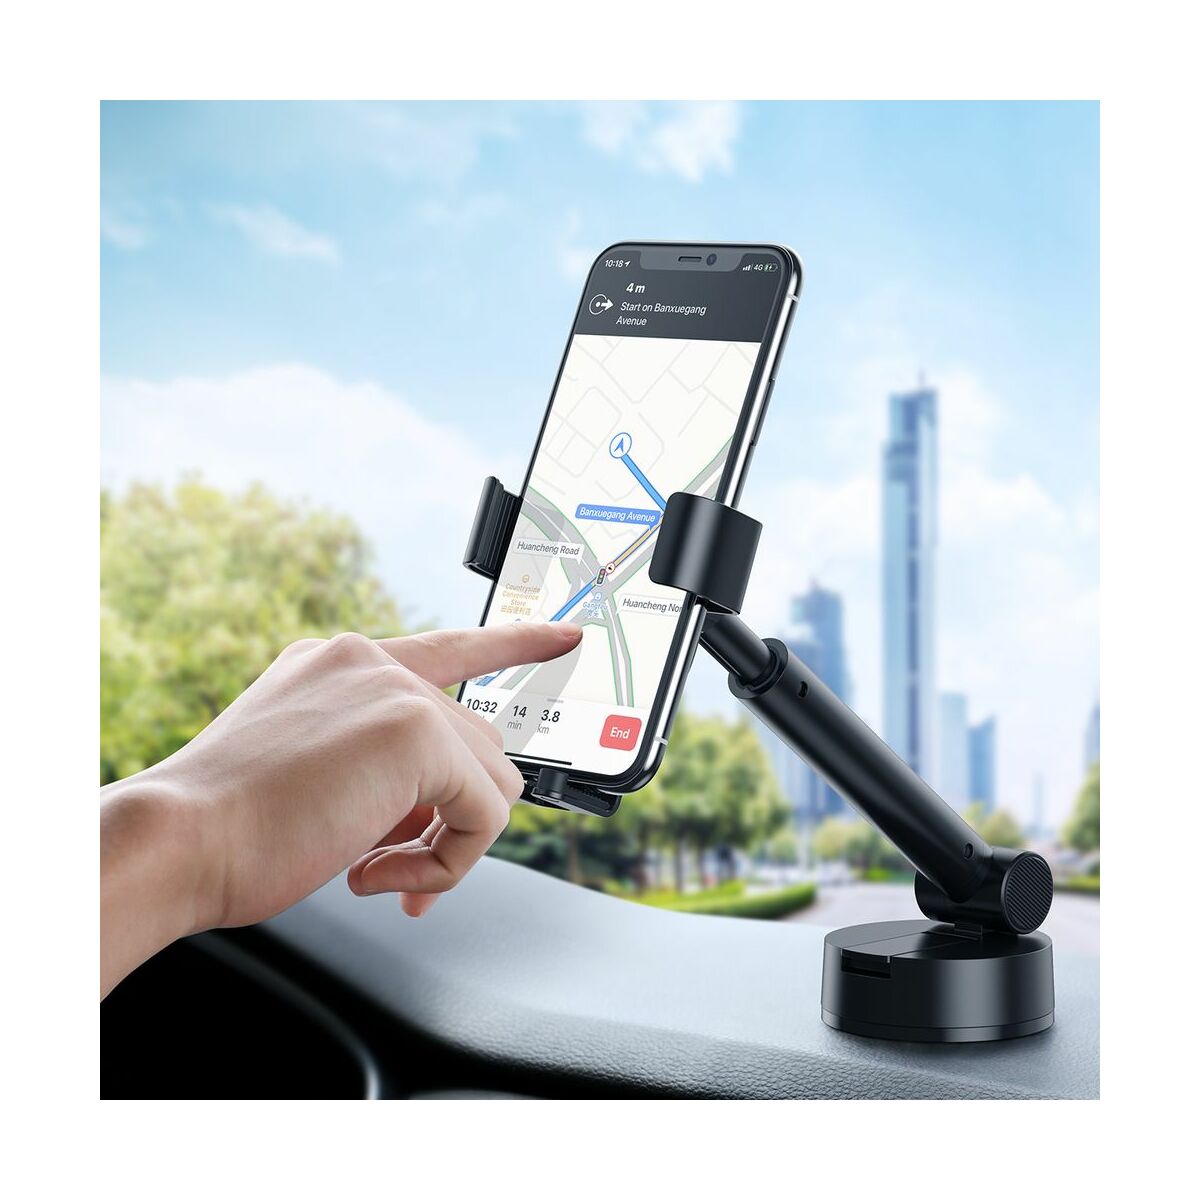 Baseus autós telefon tartó, Simplism Gravity, műszerfalra vagy szélvédőre helyezhető, fekete (SUYL-JY01)